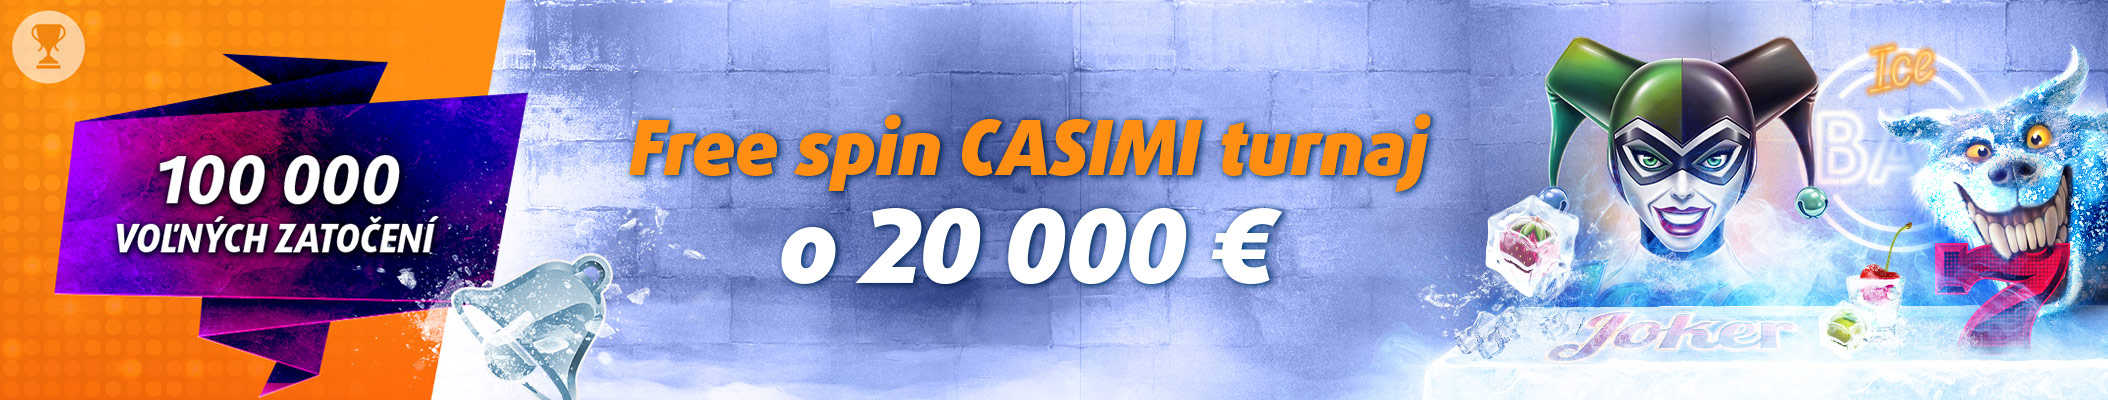 Free spin Casimi turnaj o 20 000 € v Tipsport casine